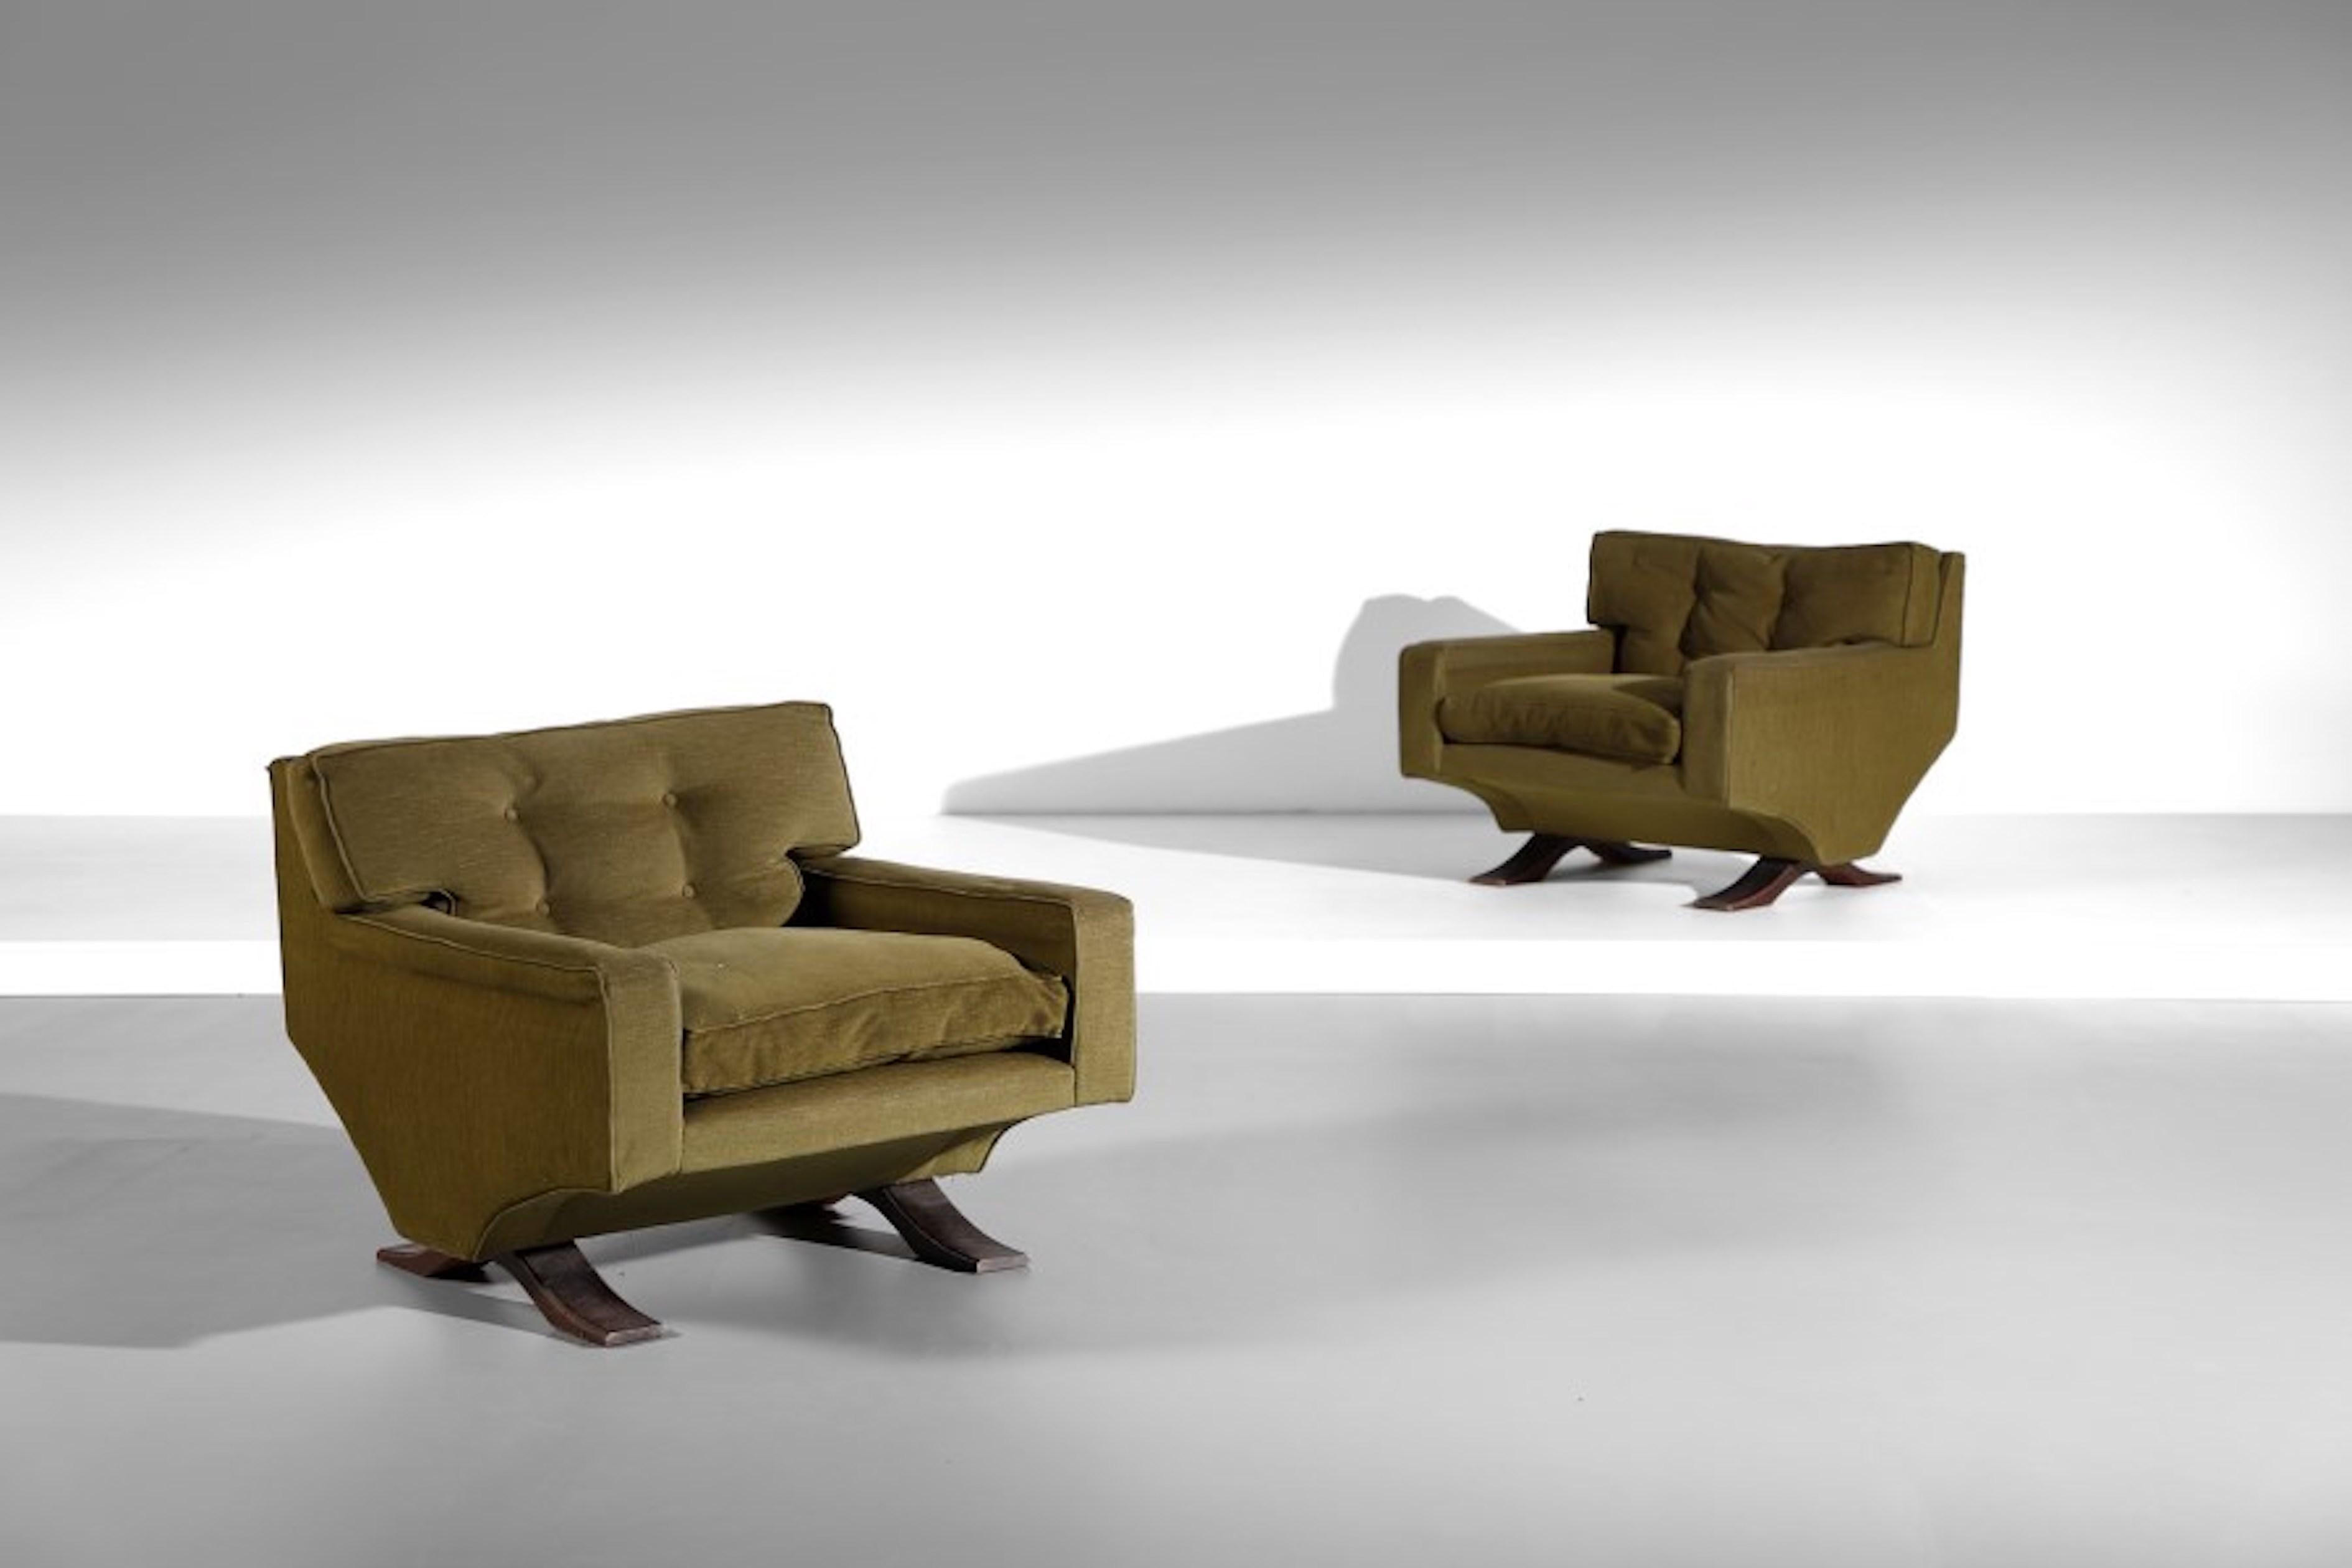 Franz Sartori est surtout connu pour ses sculptures organiques, mais il a également conçu des meubles qui reflétaient son talent de sculpteur. 
 Ces chaises incroyables sont extrêmement confortables et reflètent également les formes organiques pour